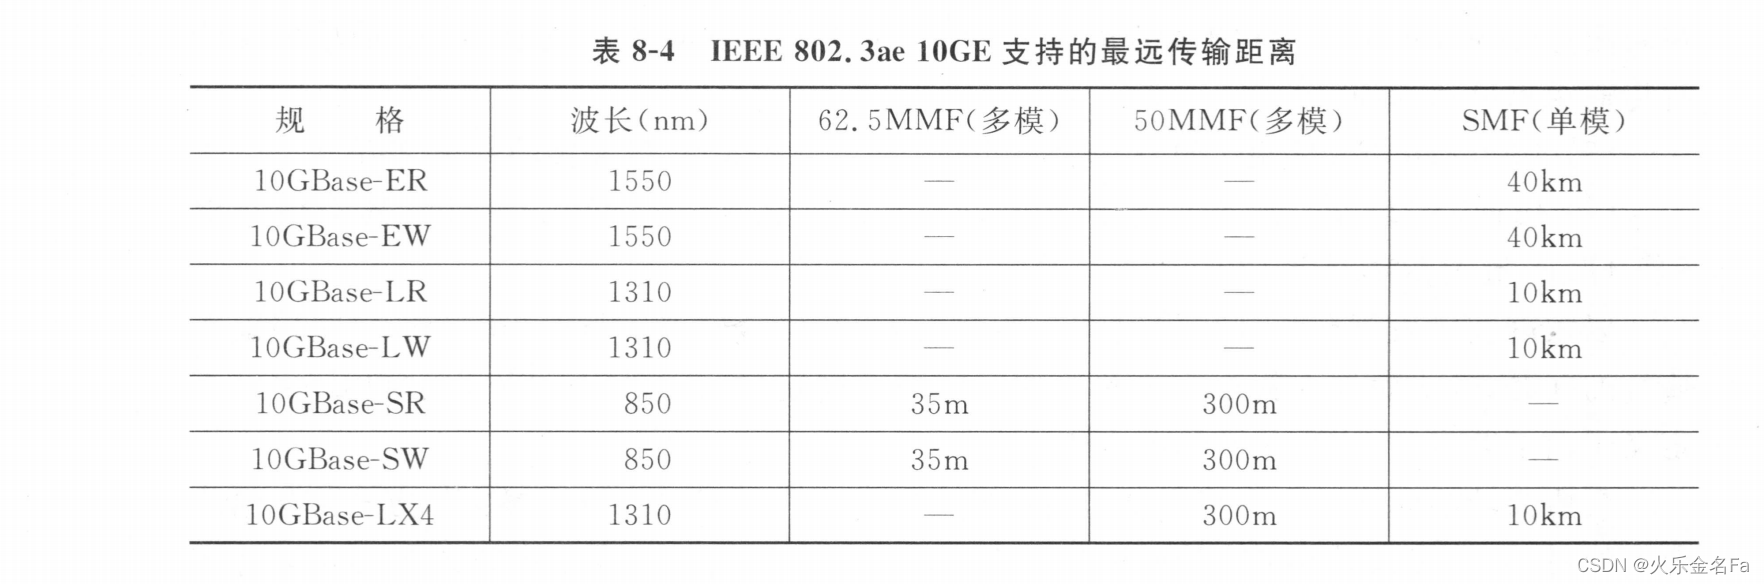 IEEE 802.3ae 10GE支持的最远传输距离